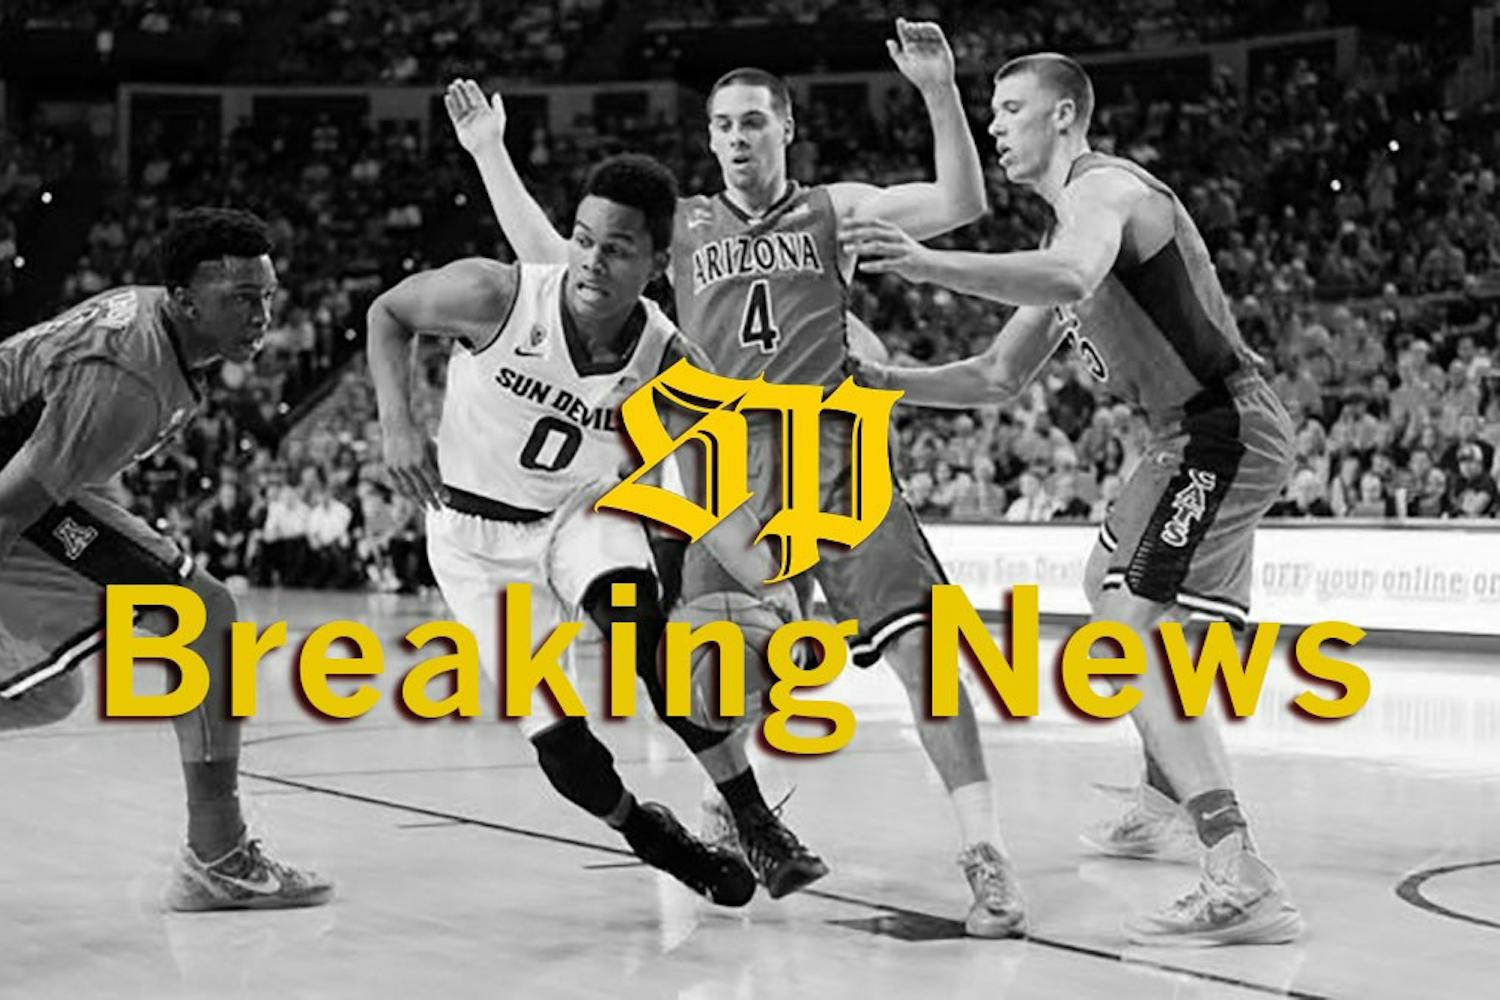 Men's Basketball Breaking News